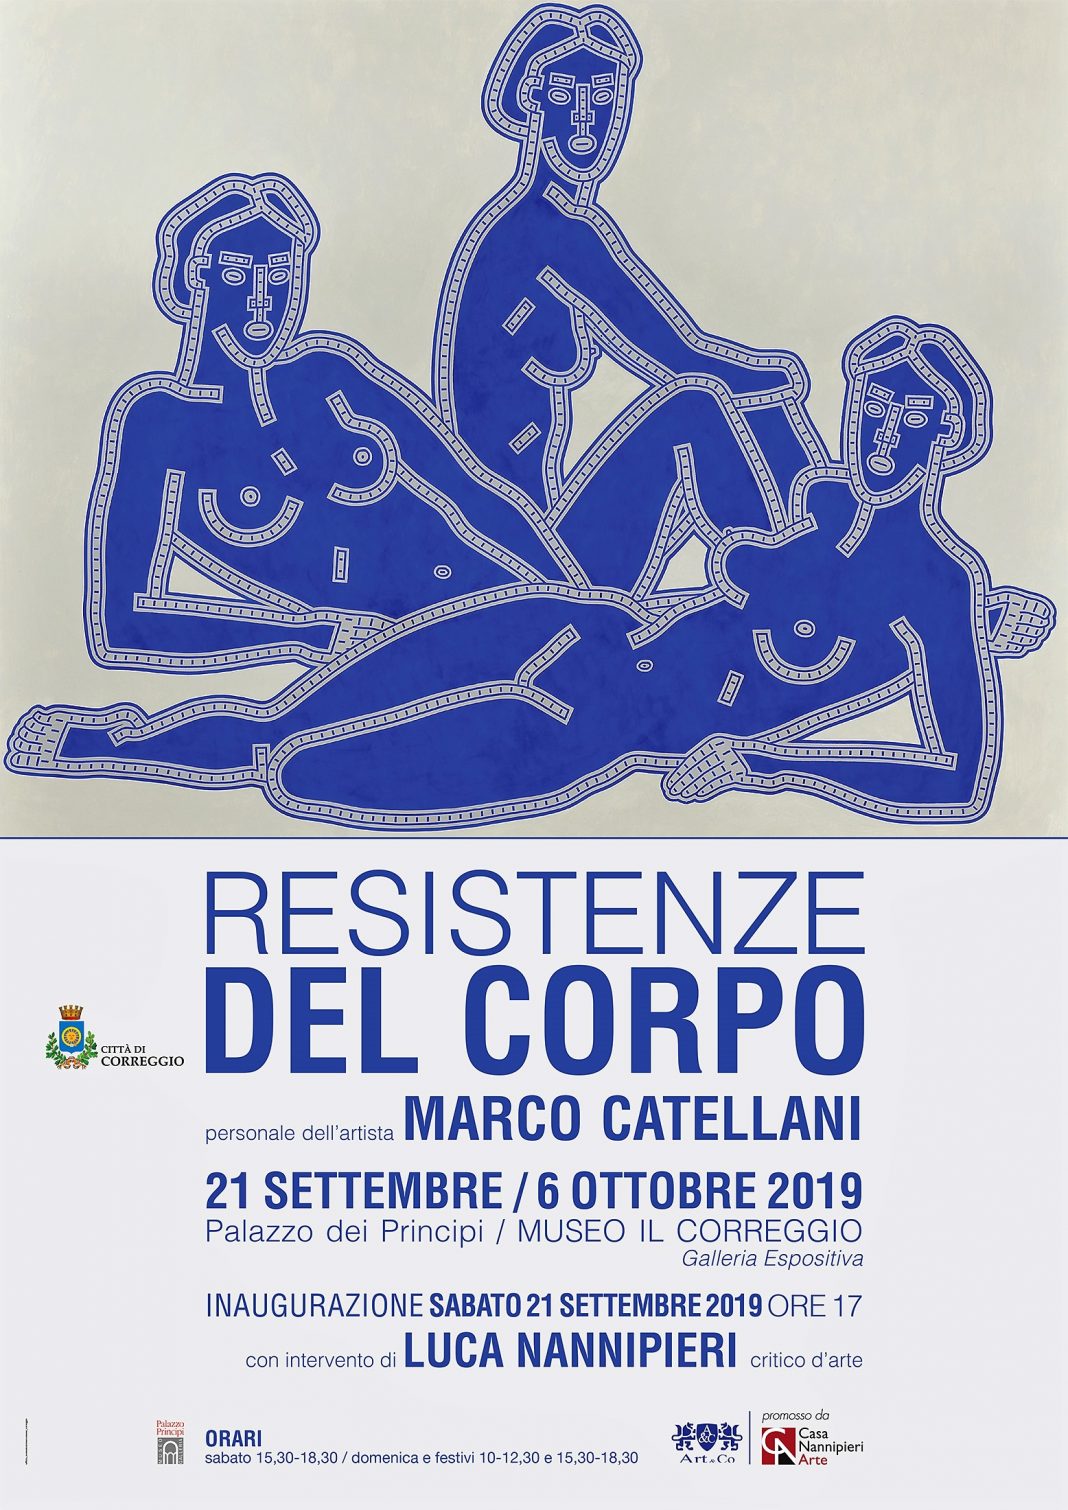 Marco Catellani- Resistenze del corpohttps://www.exibart.com/repository/media/formidable/11/locandina-catellani-5-1068x1510.jpg